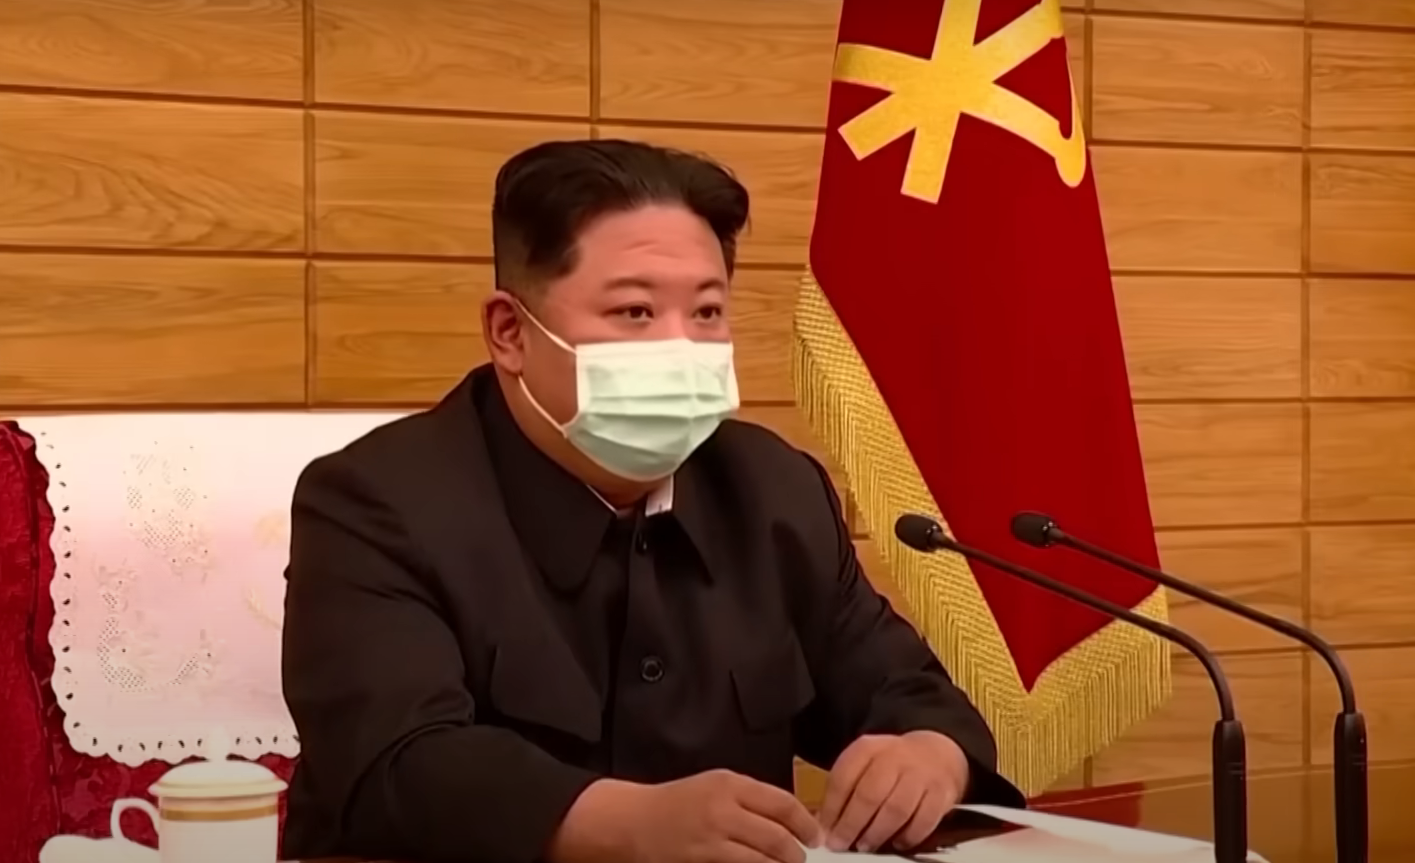  Sjeverna Koreja bori se sa žarištima korona virusa 